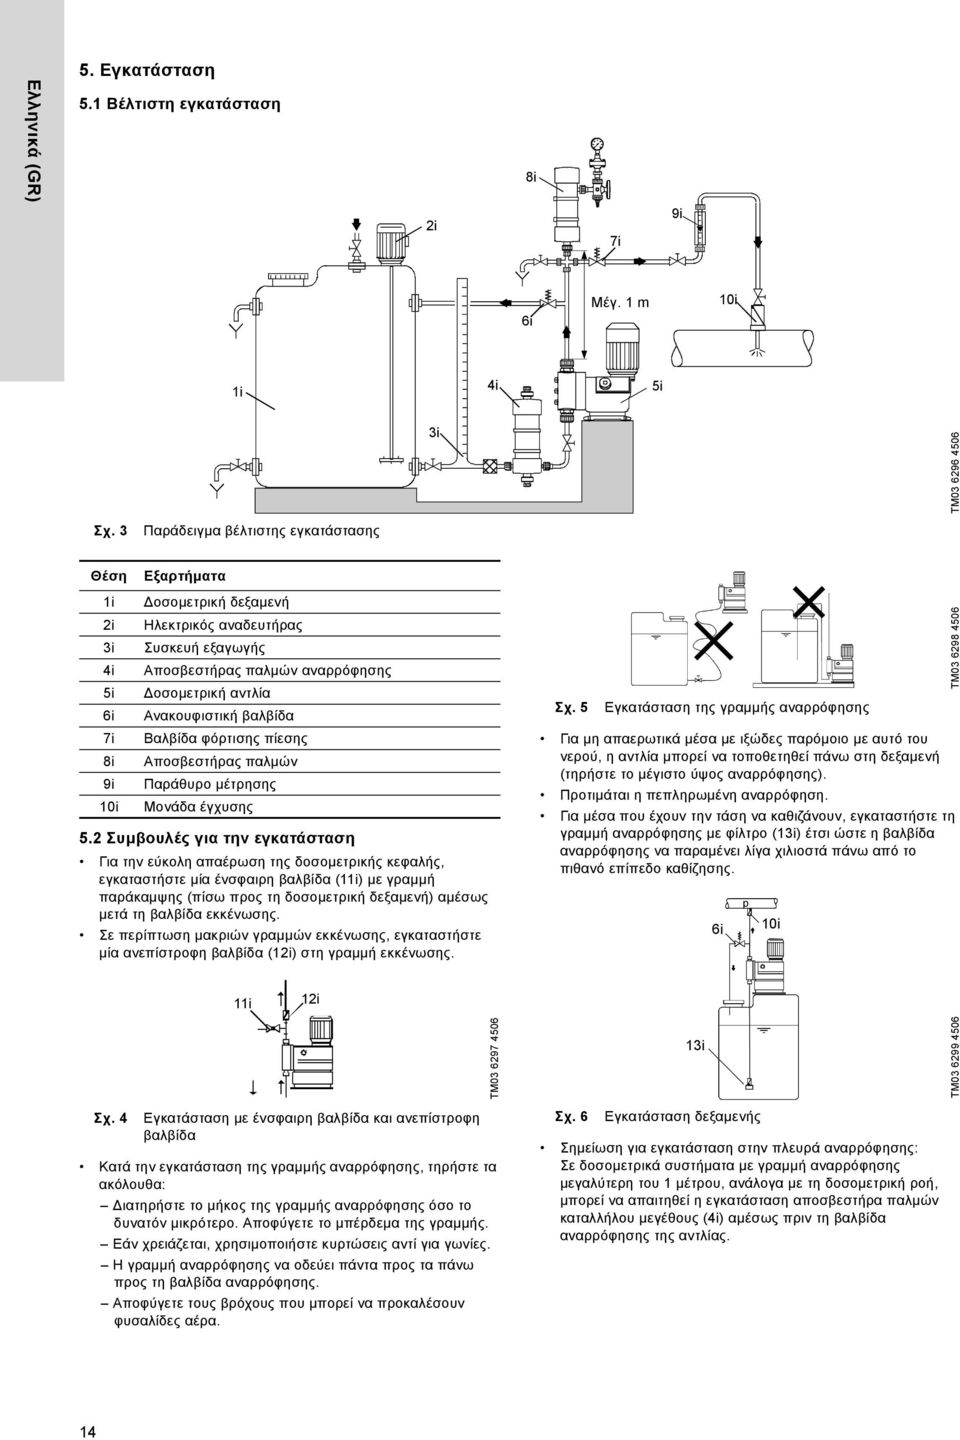 Ανακουφιστική βαλβίδα Βαλβίδα φόρτισης πίεσης Αποσβεστήρας παλμών Παράθυρο μέτρησης Μονάδα έγχυσης 5.